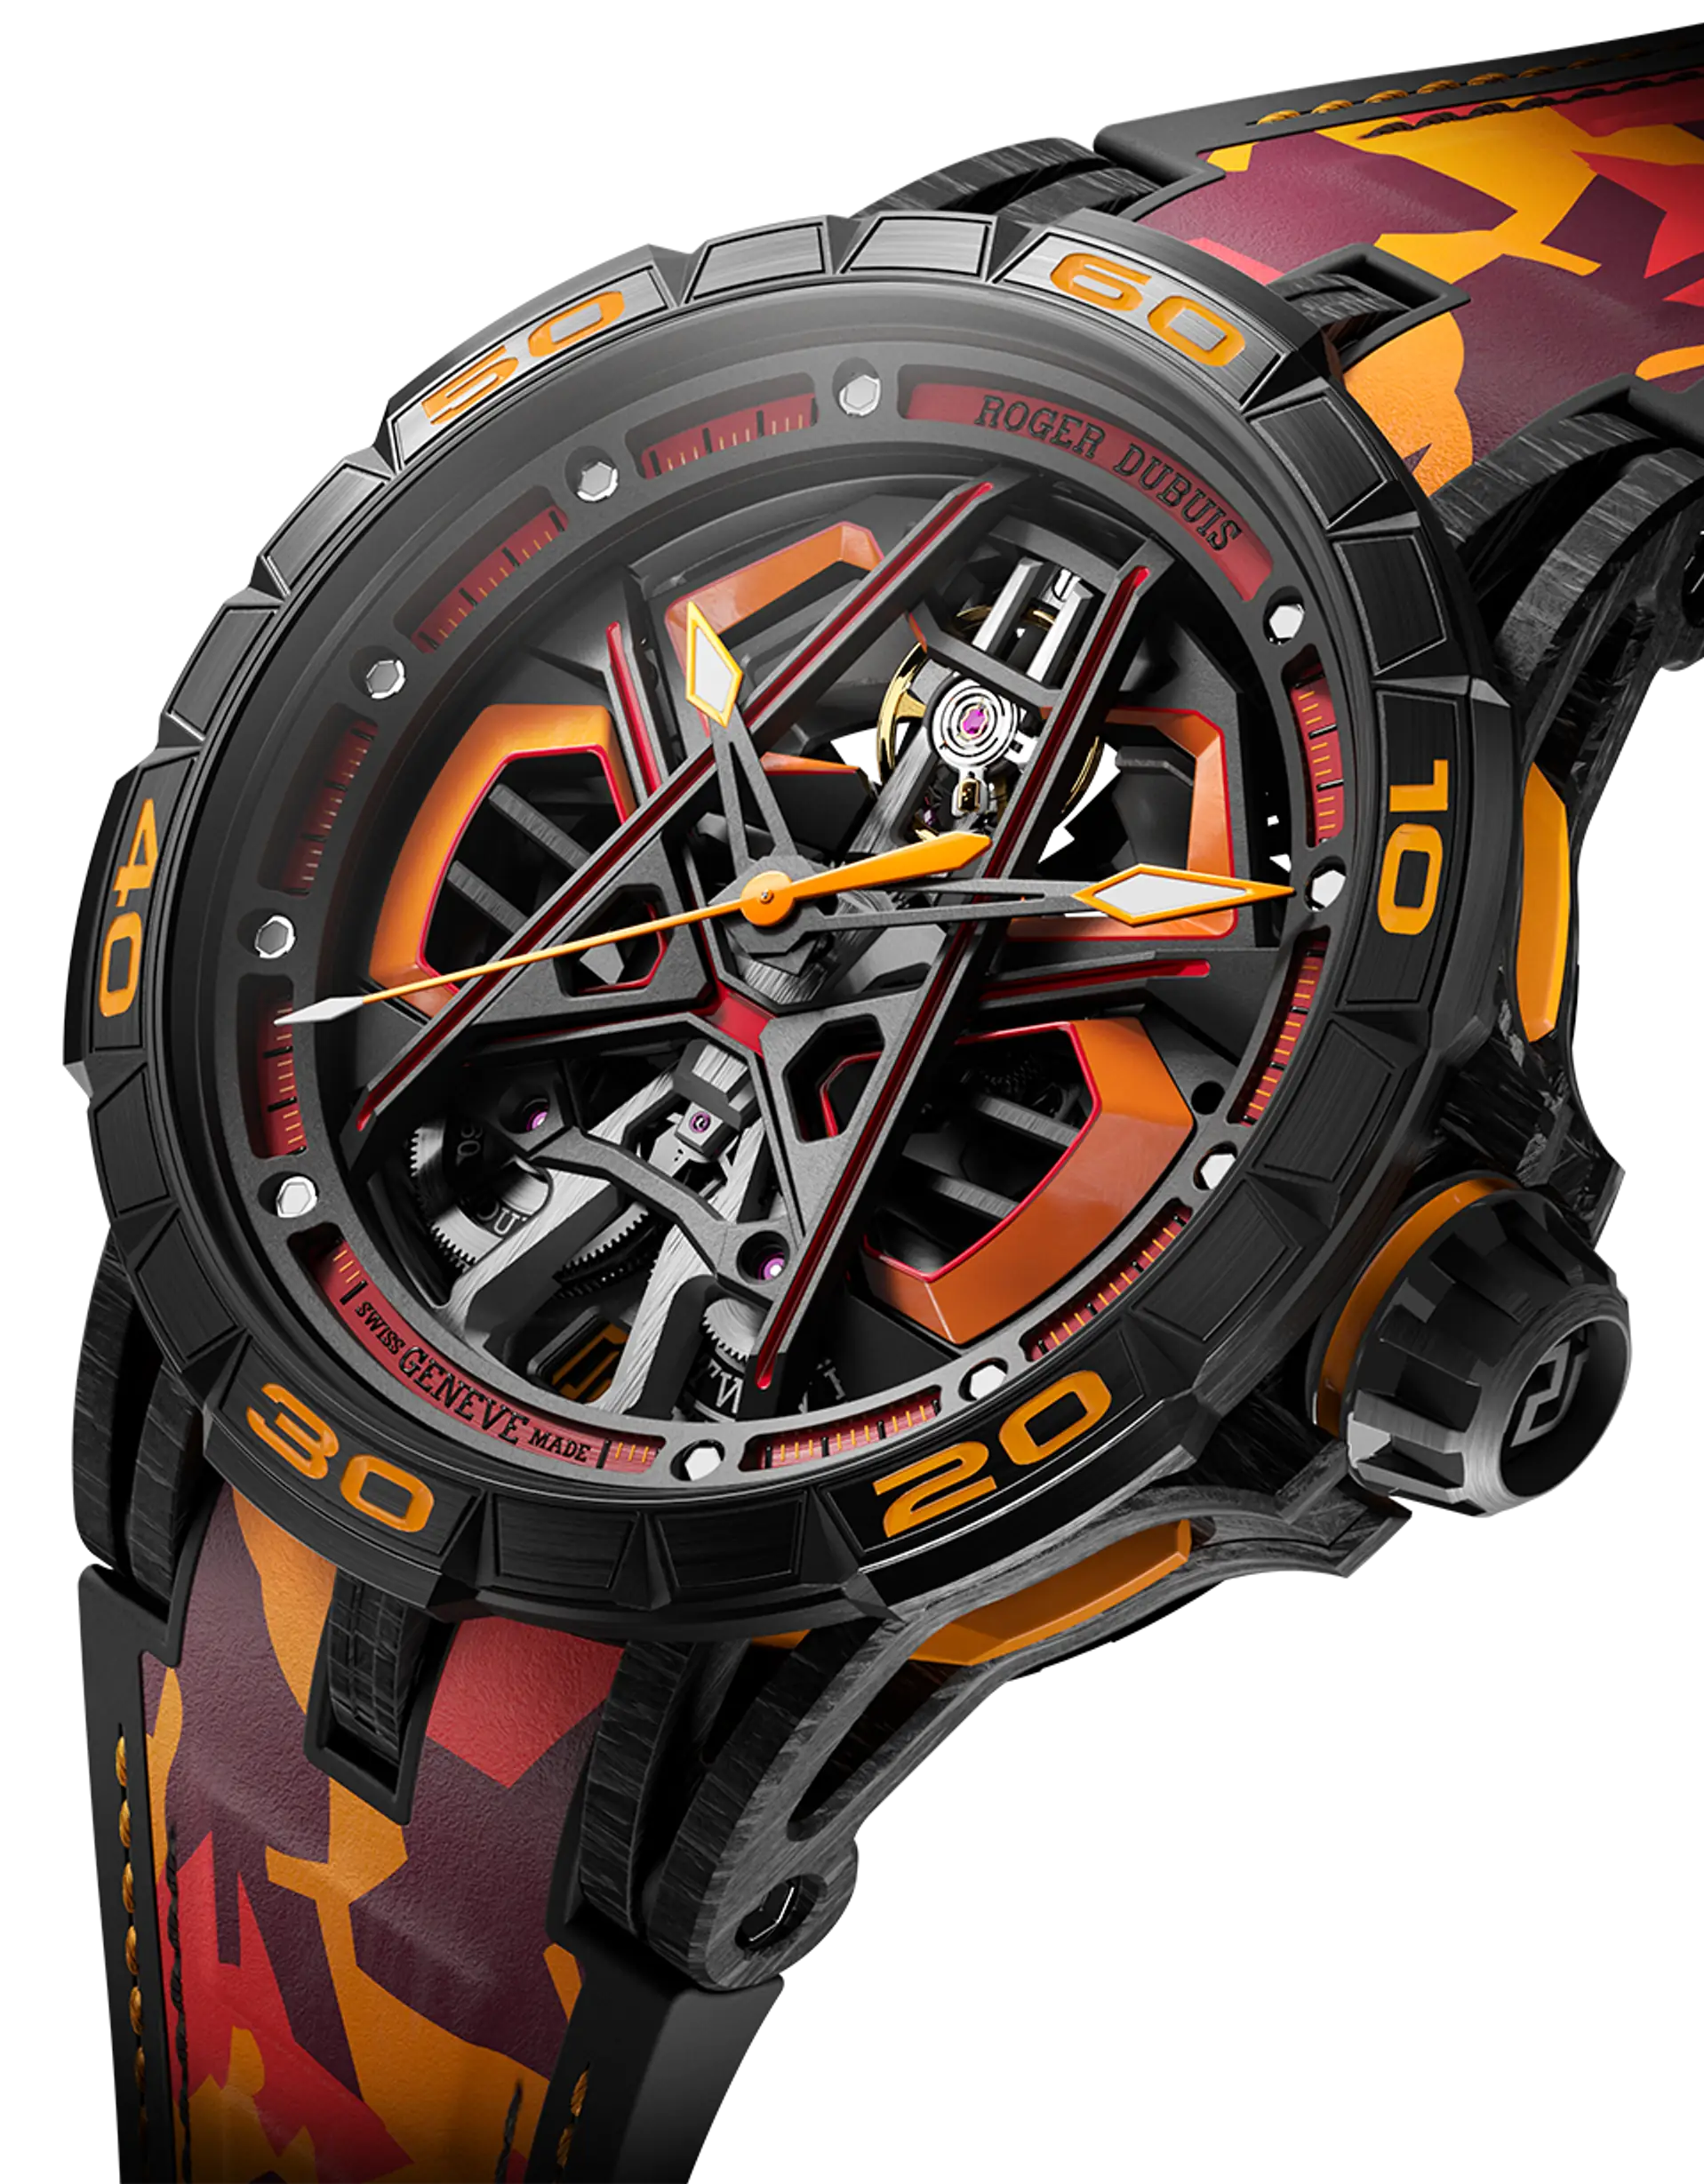 Burlas Cambiable calidad Roger Dubuis nos descubre su limitado reloj inspirado en Lamborghini